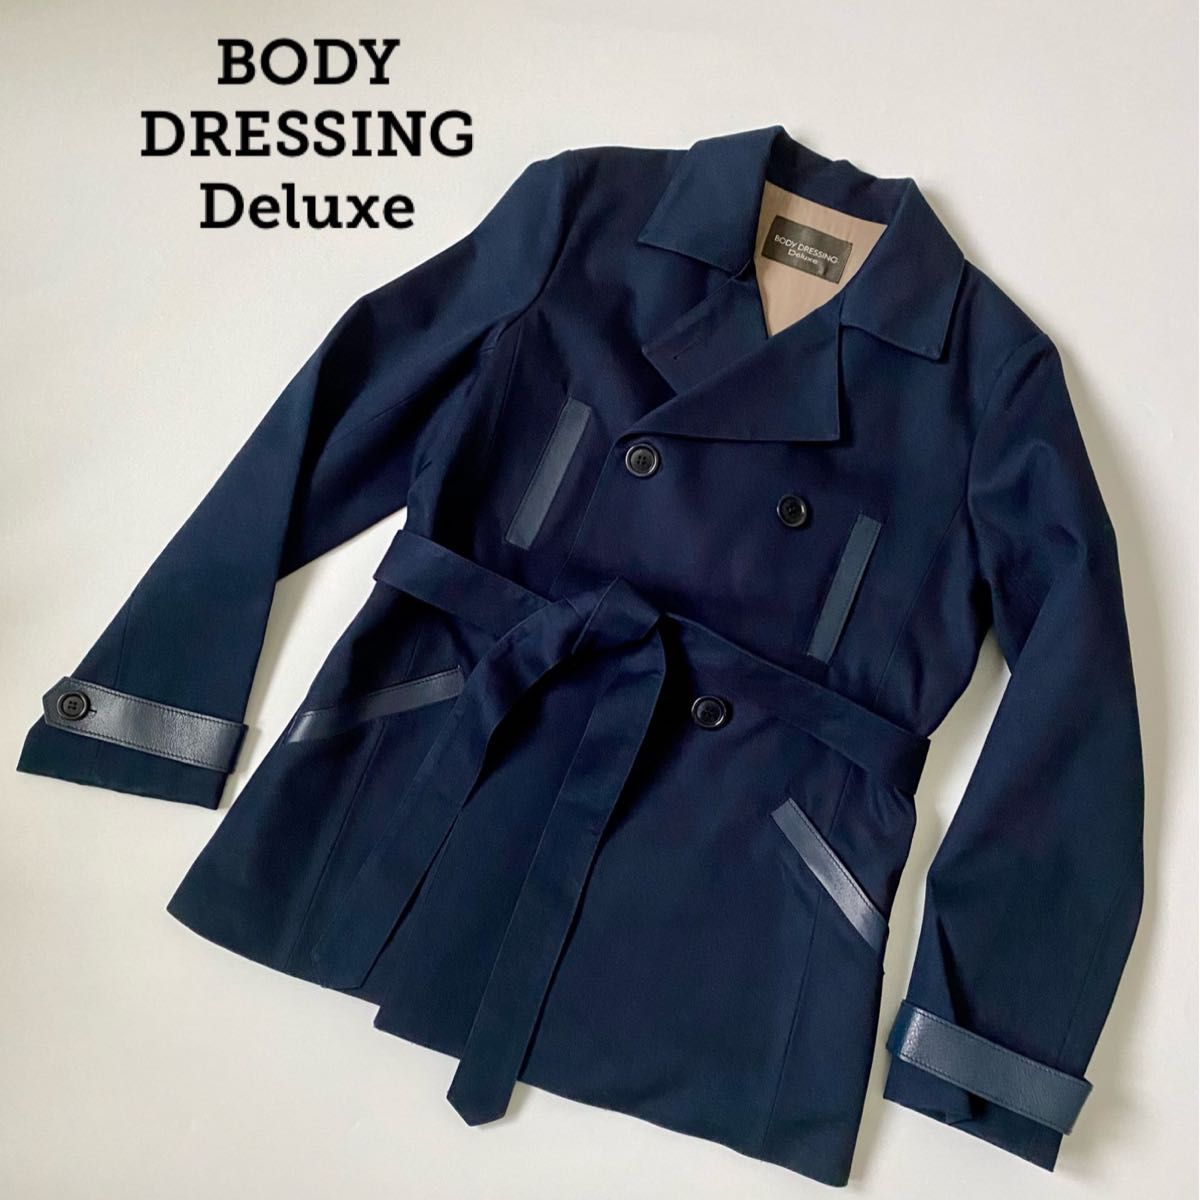 特価商品 BODY コート 未着用 Deluxe DRESSING ロングコート - www